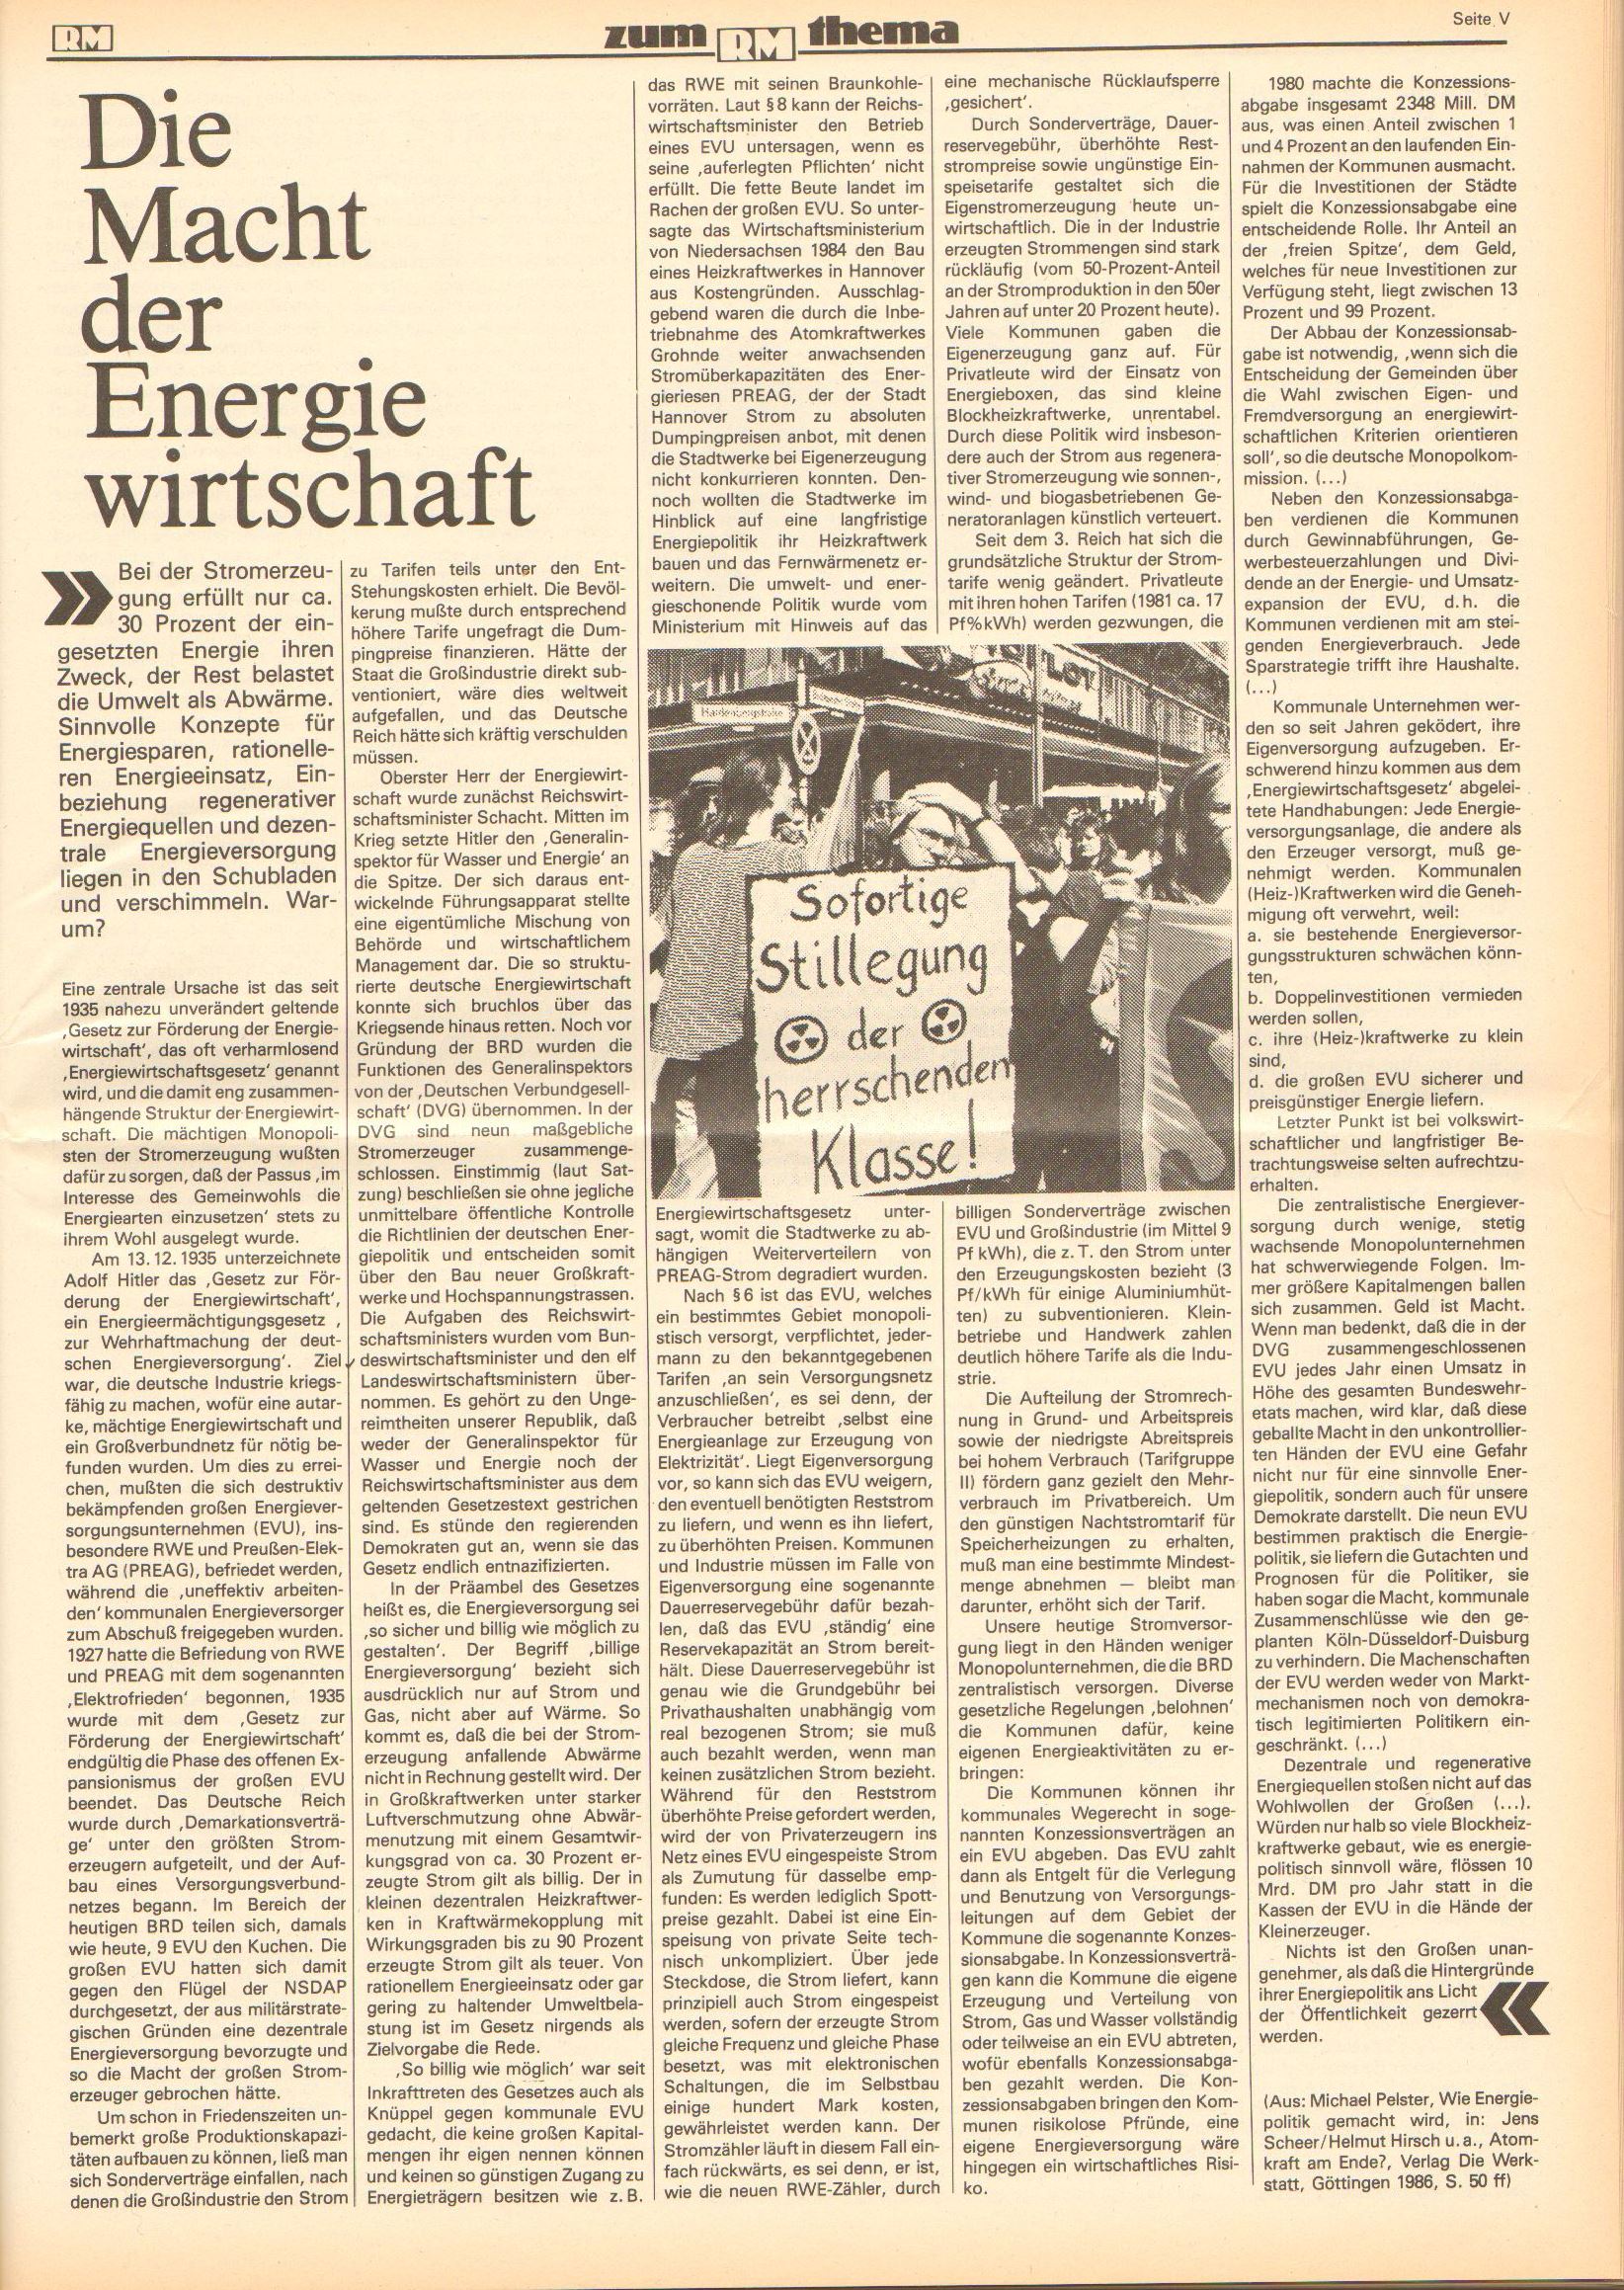 Roter Morgen, 20. Jg., 16. Mai 1986, Nr. 13, Seite 11